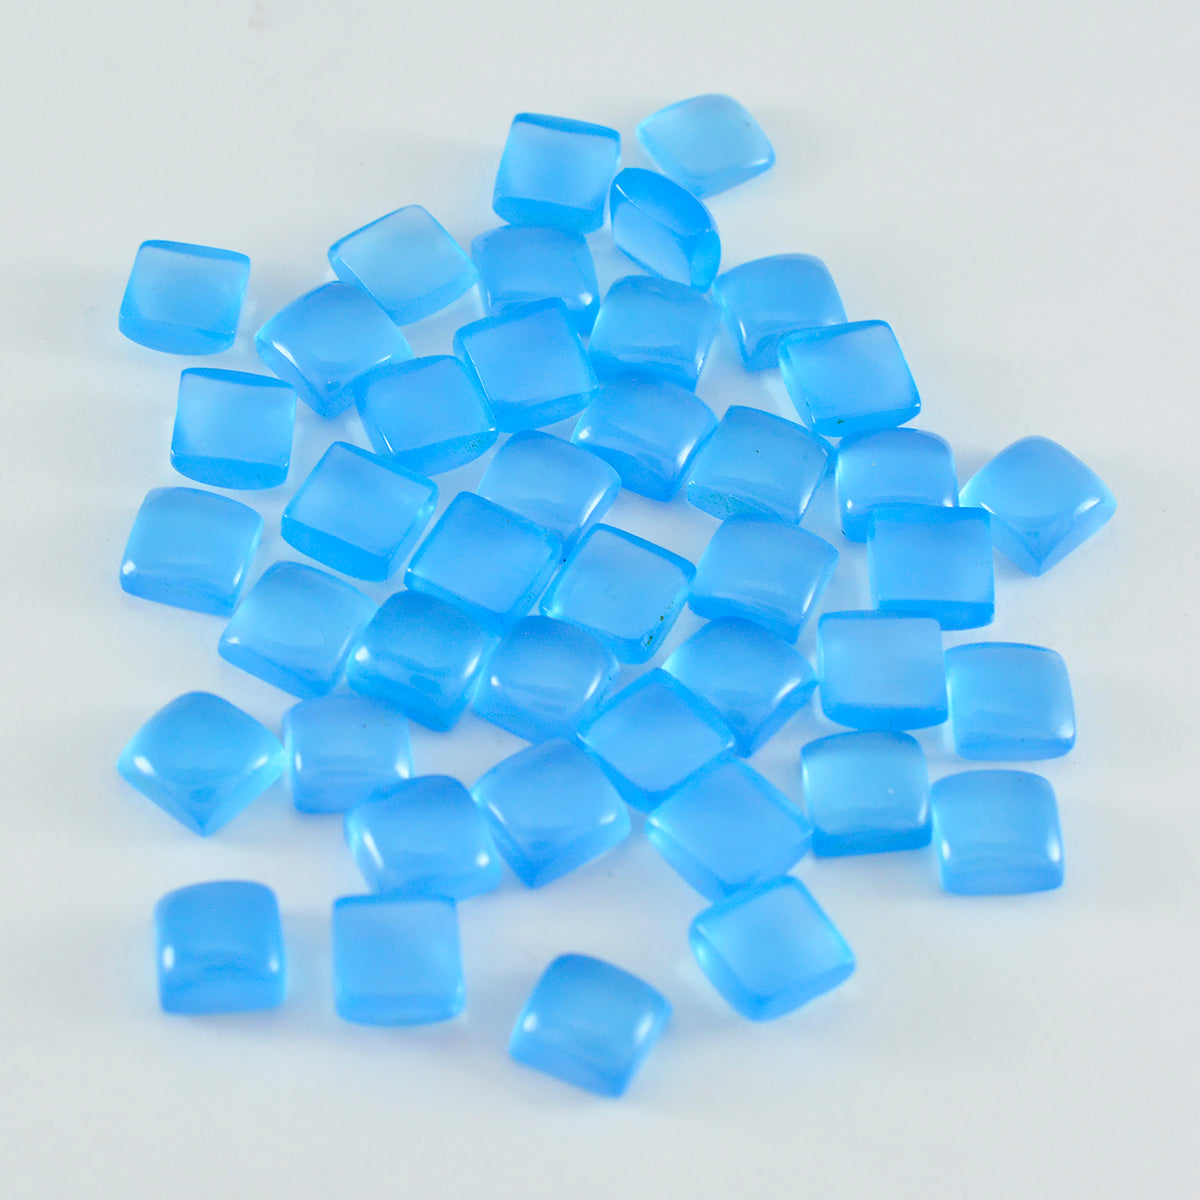 Riyogems 1 Stück blauer Chalcedon-Cabochon, 4 x 4 mm, quadratische Form, hübscher, hochwertiger loser Stein